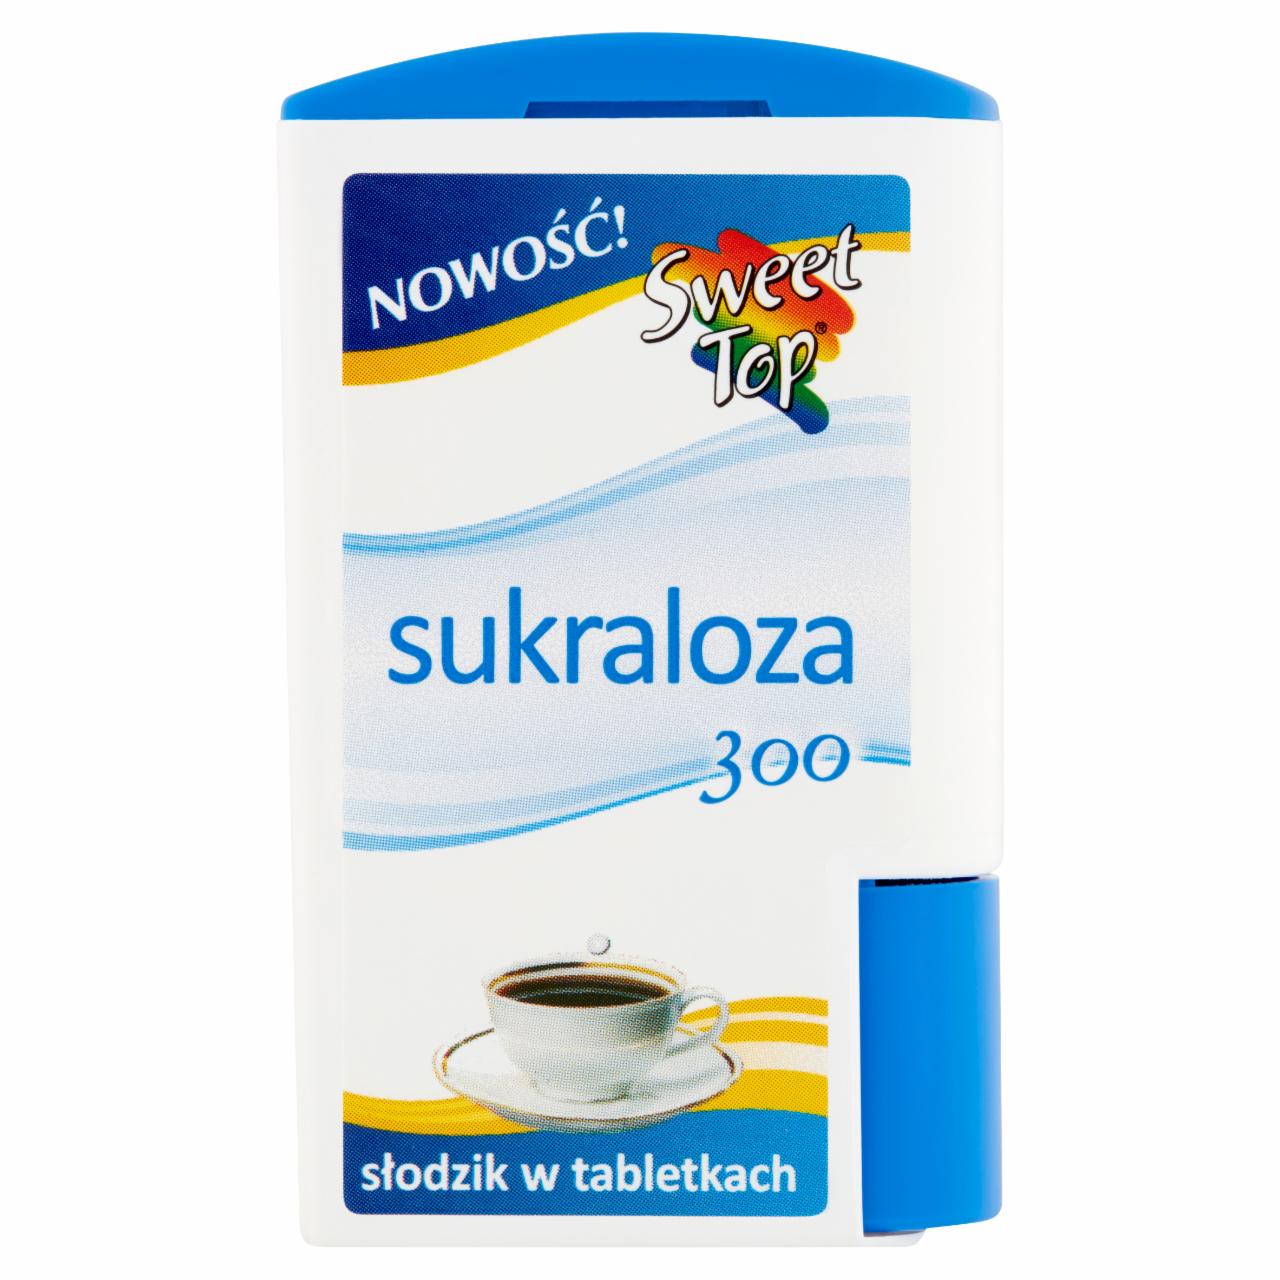 Zdjęcia - Sweet Top Sukraloza 300 Słodzik w tabletkach 16,5 g